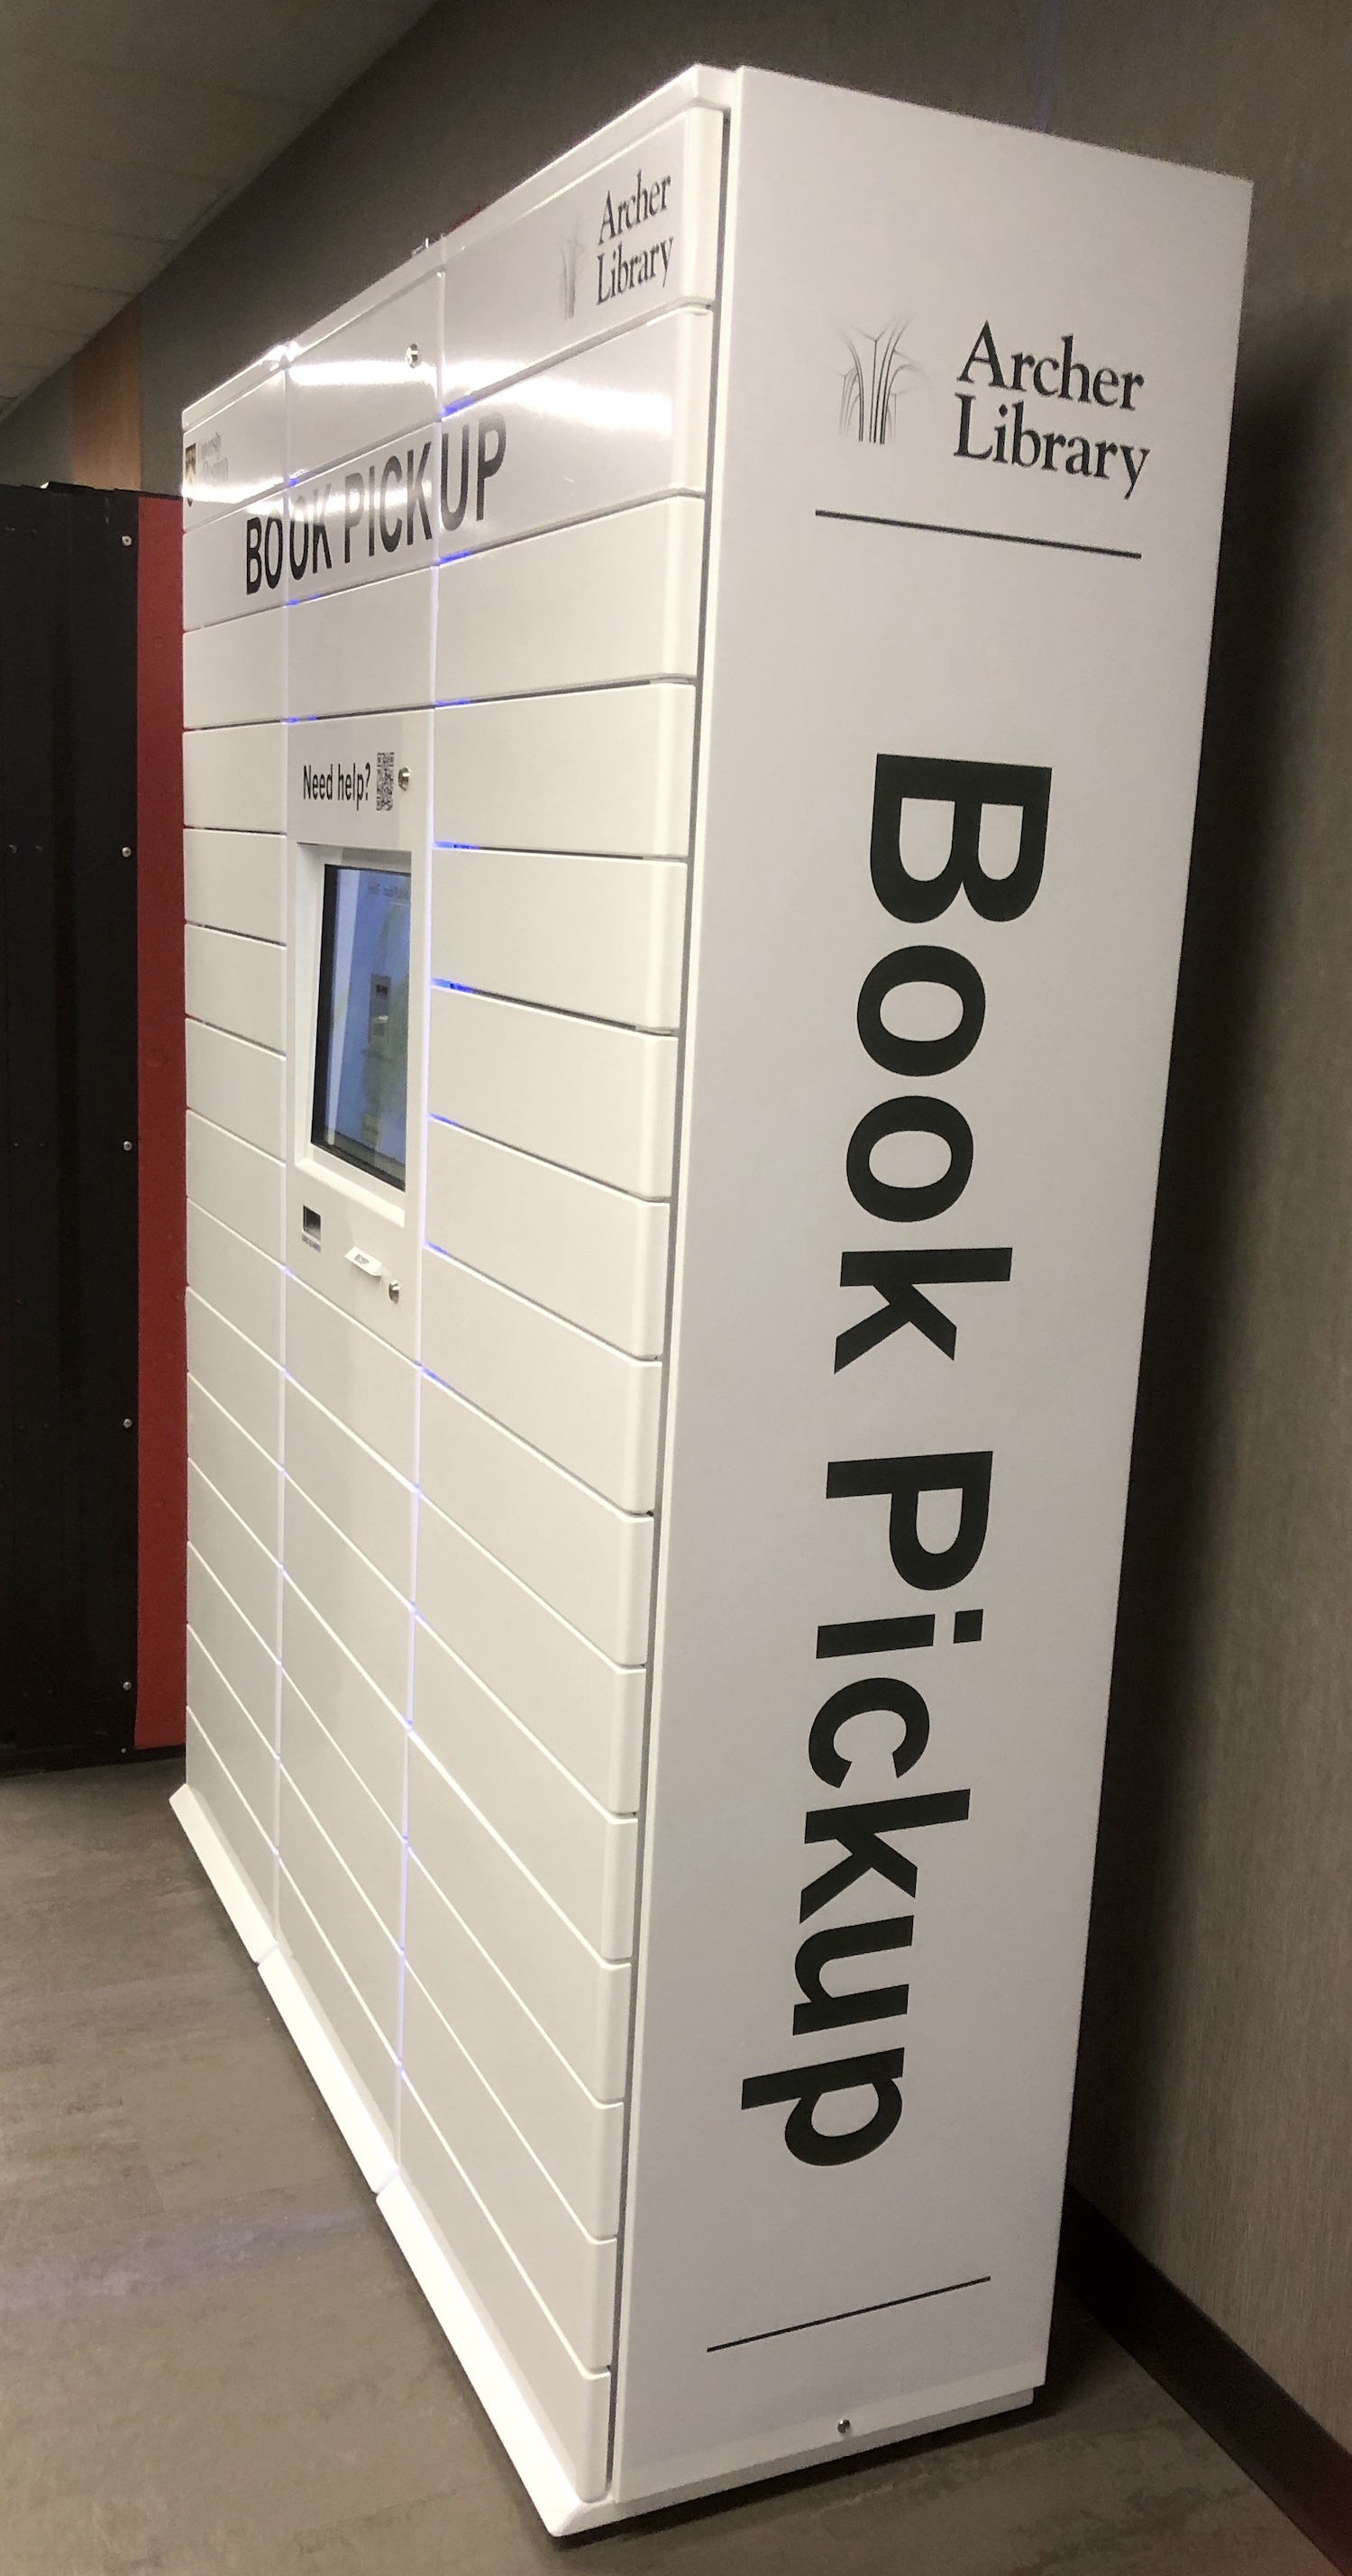 Book pickup lockers